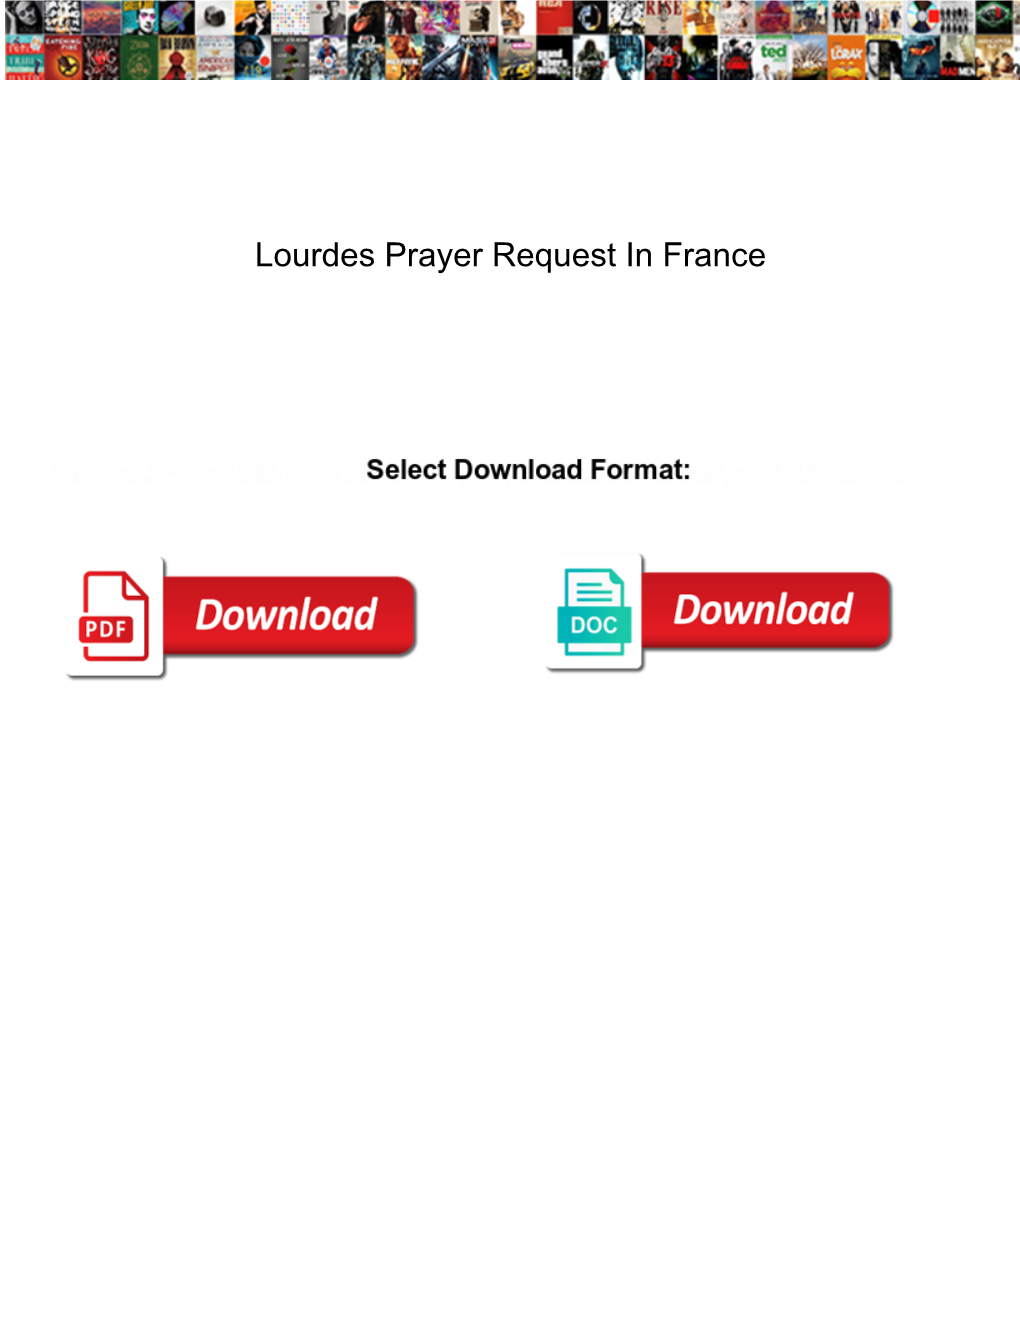 Lourdes Prayer Request in France